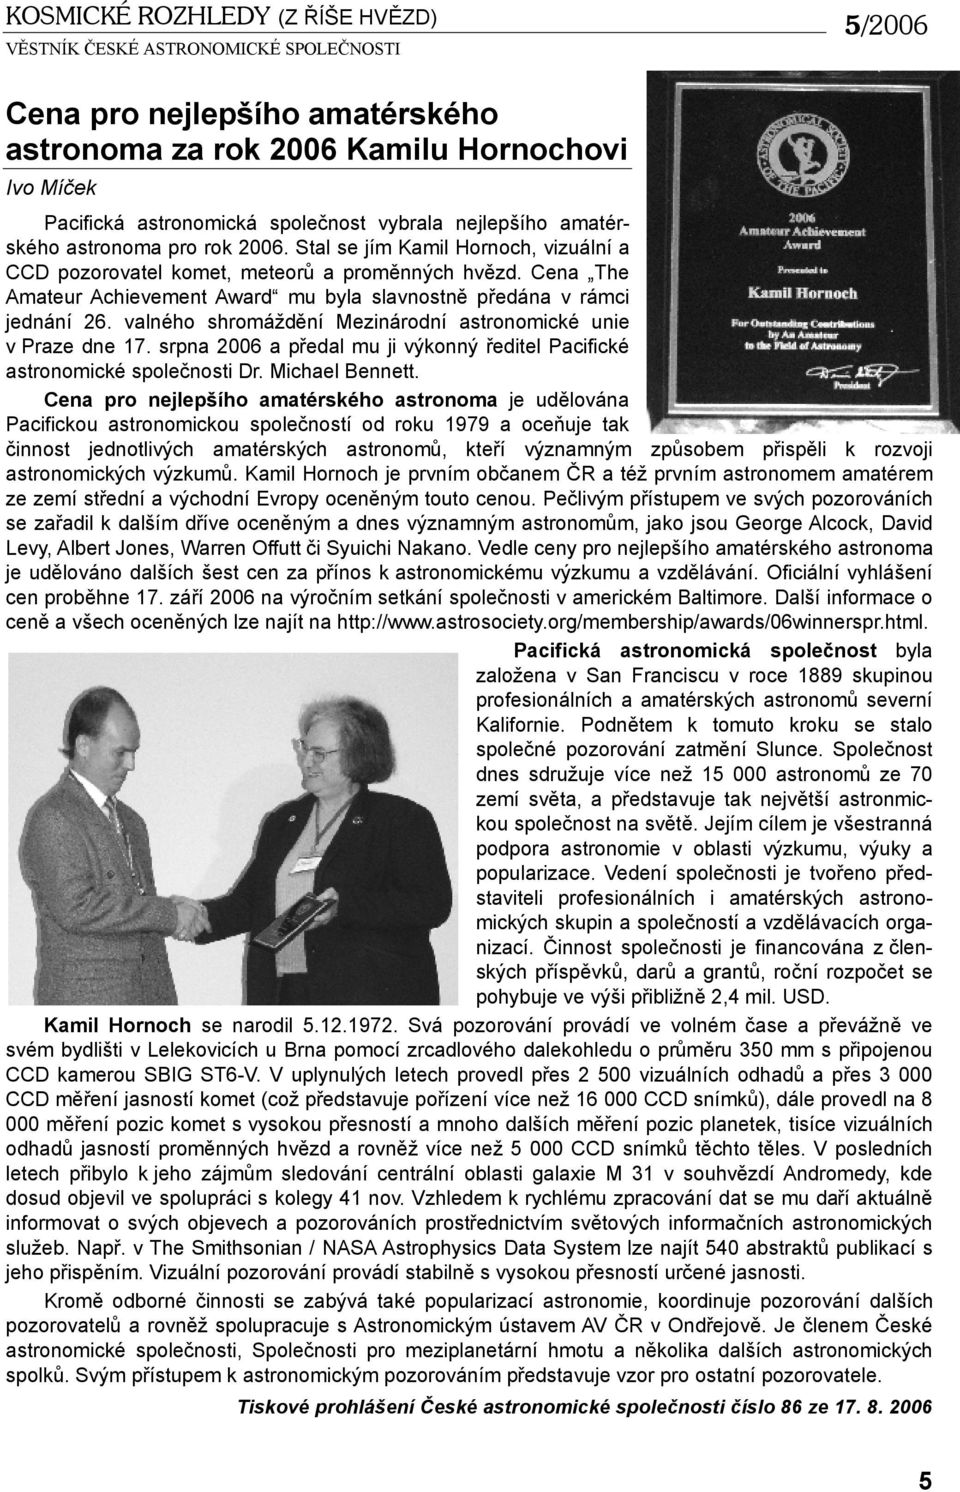 valného shromáždění Mezinárodní astronomické unie v Praze dne 17. srpna 2006 a předal mu ji výkonný ředitel Pacifické astronomické společnosti Dr. Michael Bennett.